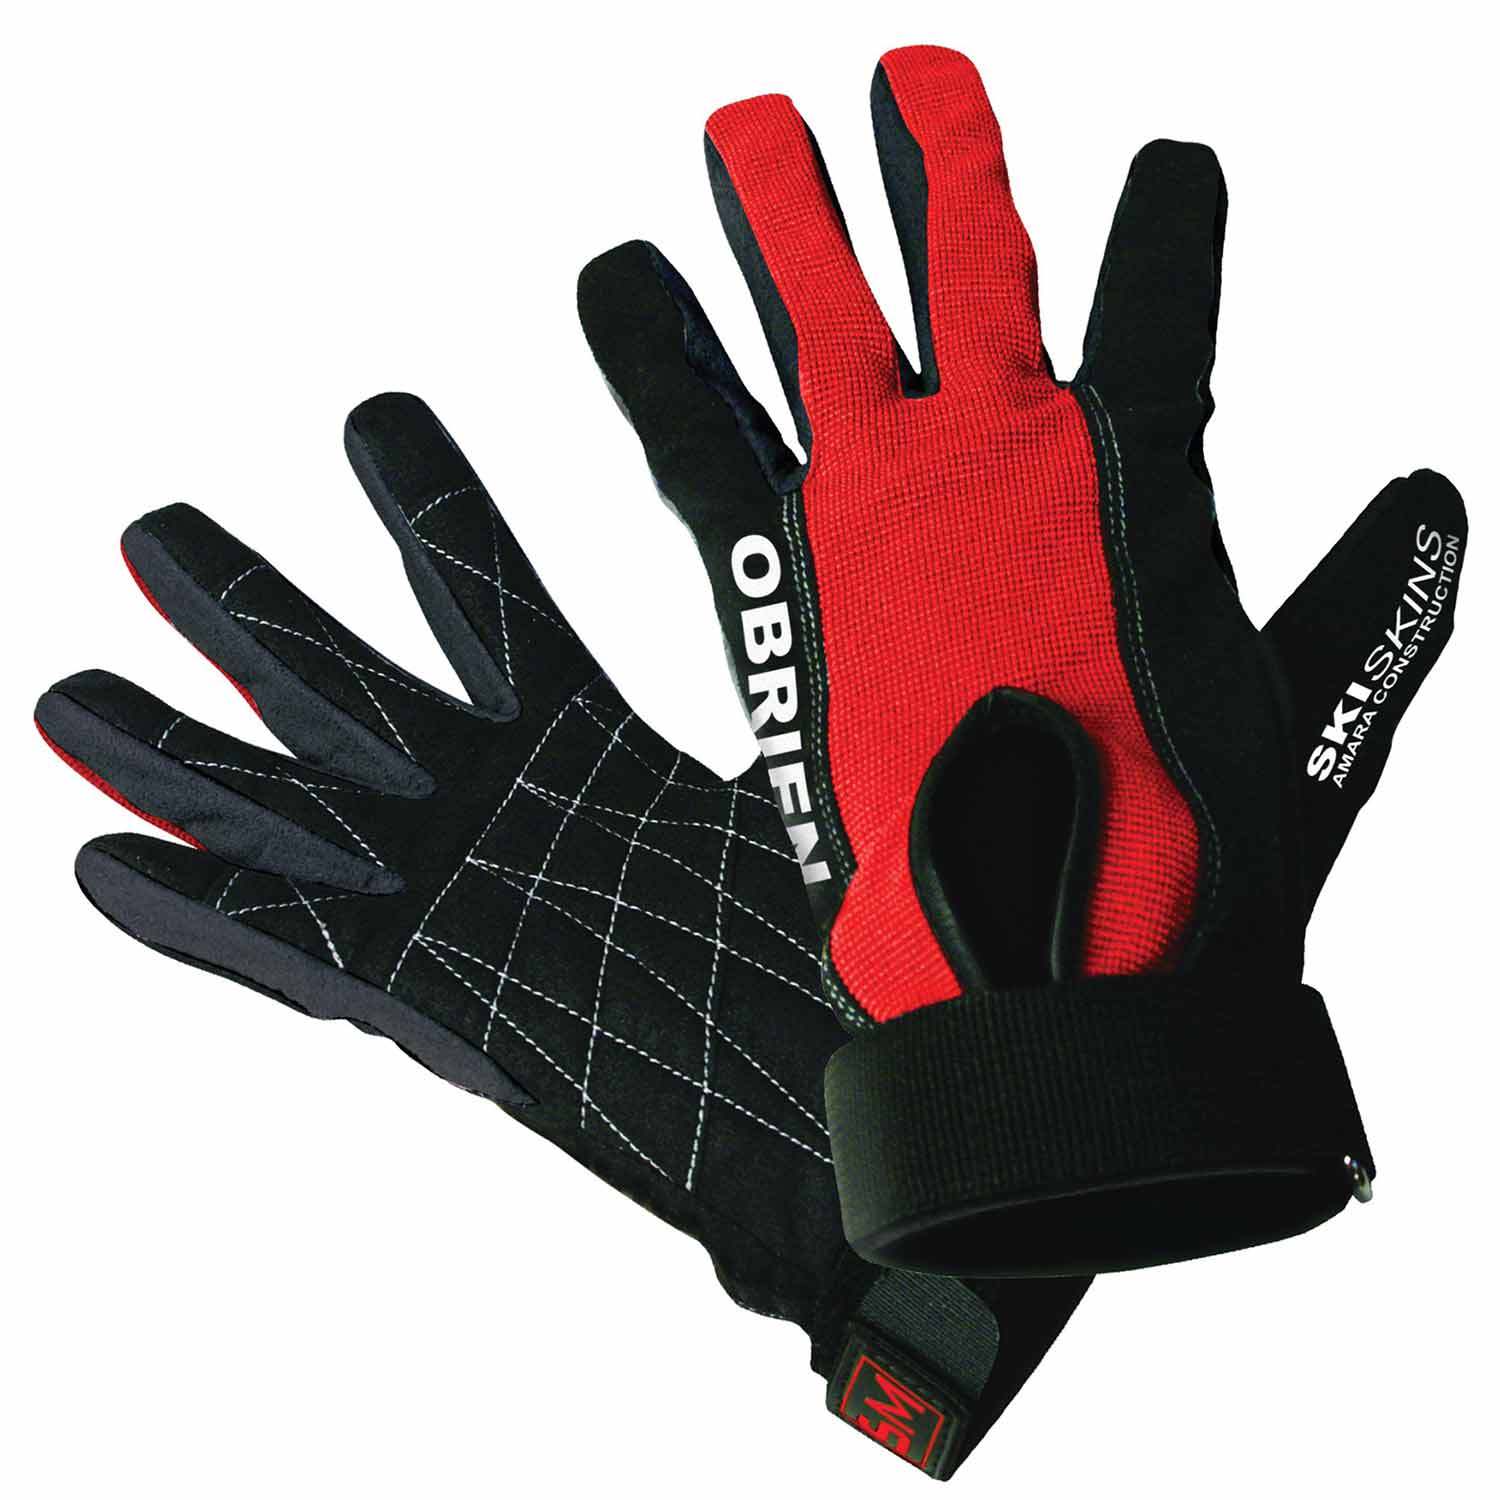 O'BRIEN Ski Skin Full Finger Gloves